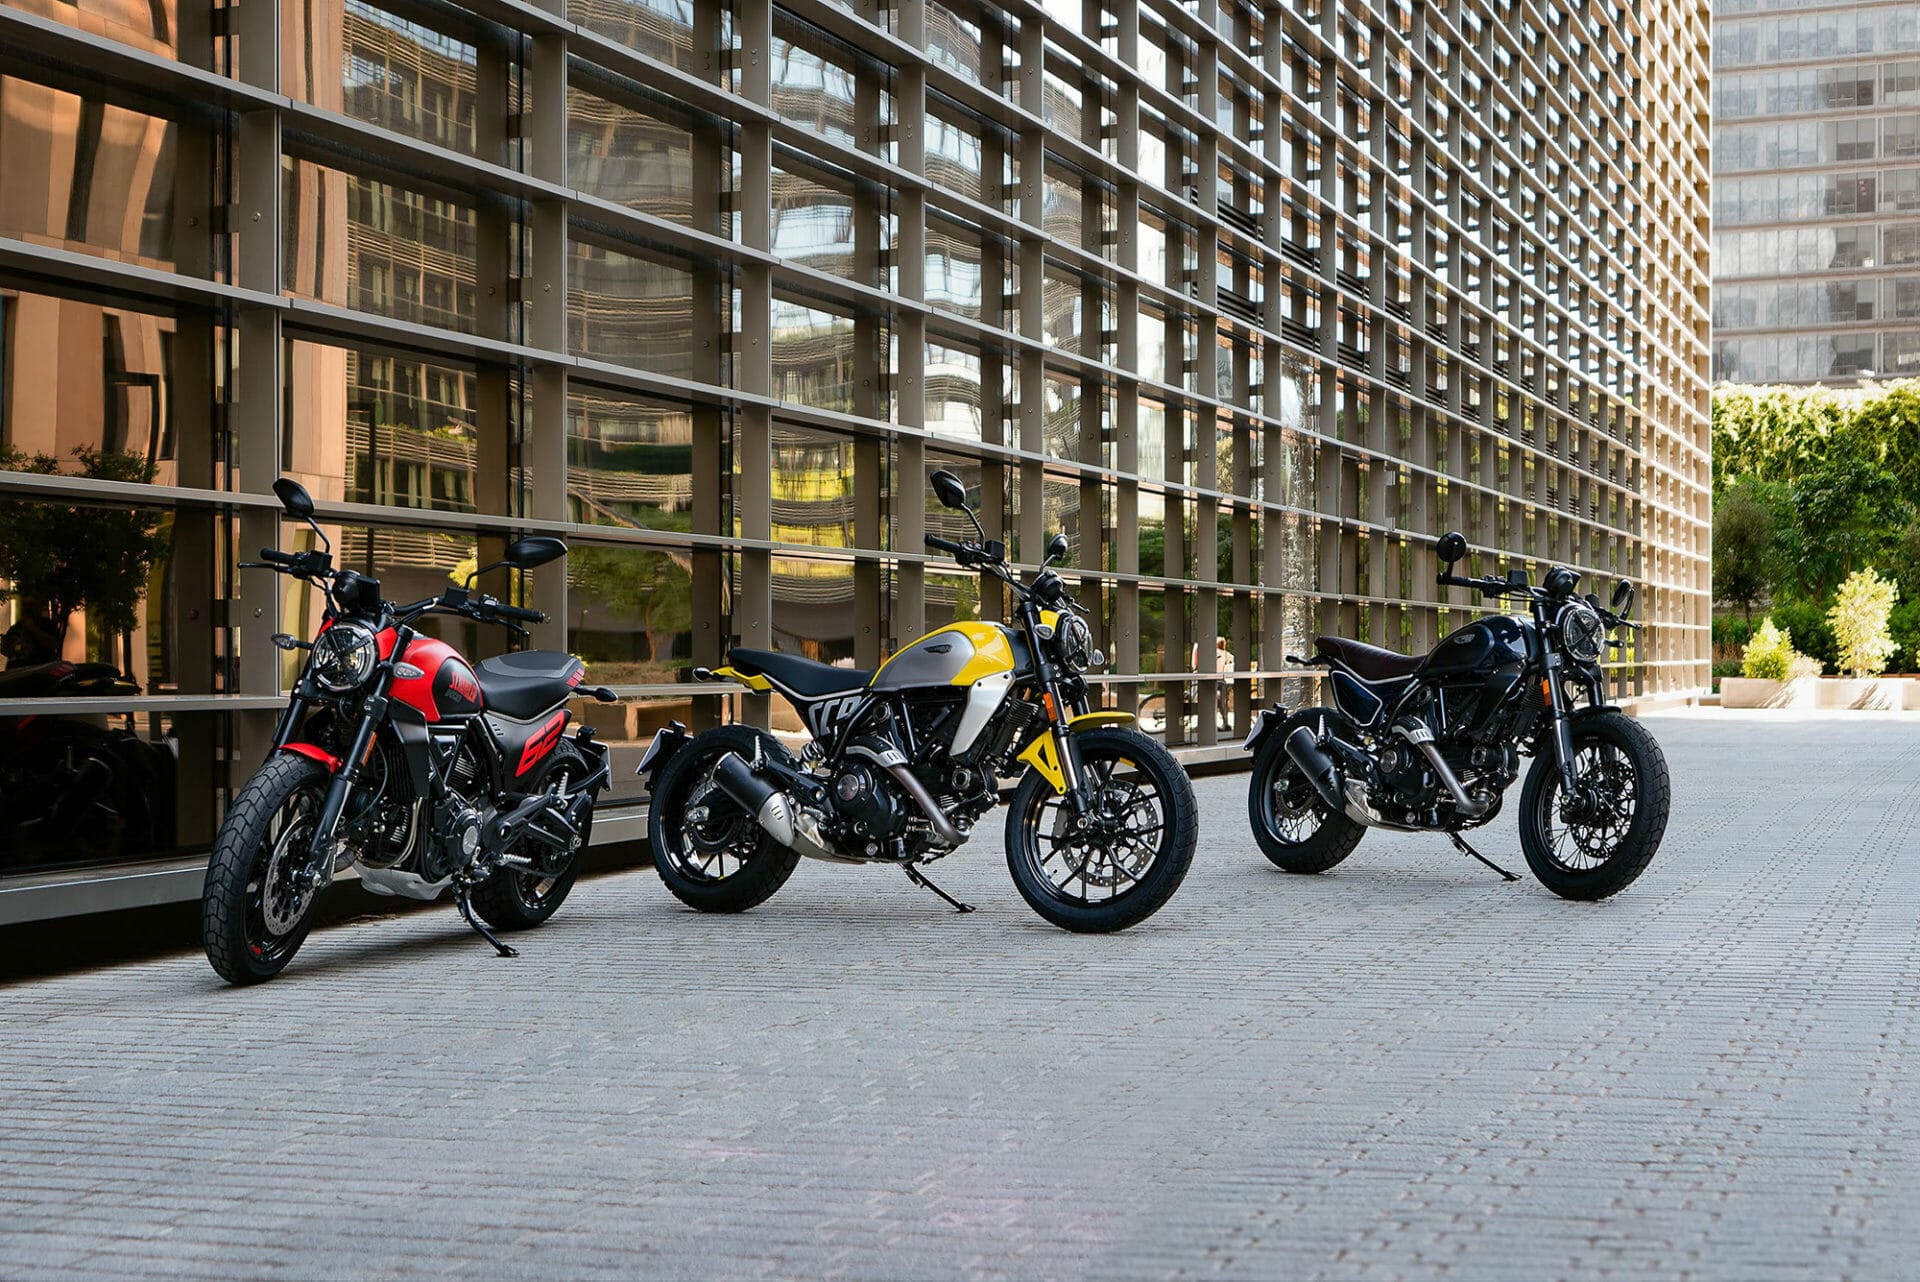 Ducati überarbeitet die Scrambler 800 Familie - MOTORCYCLES.NEWS